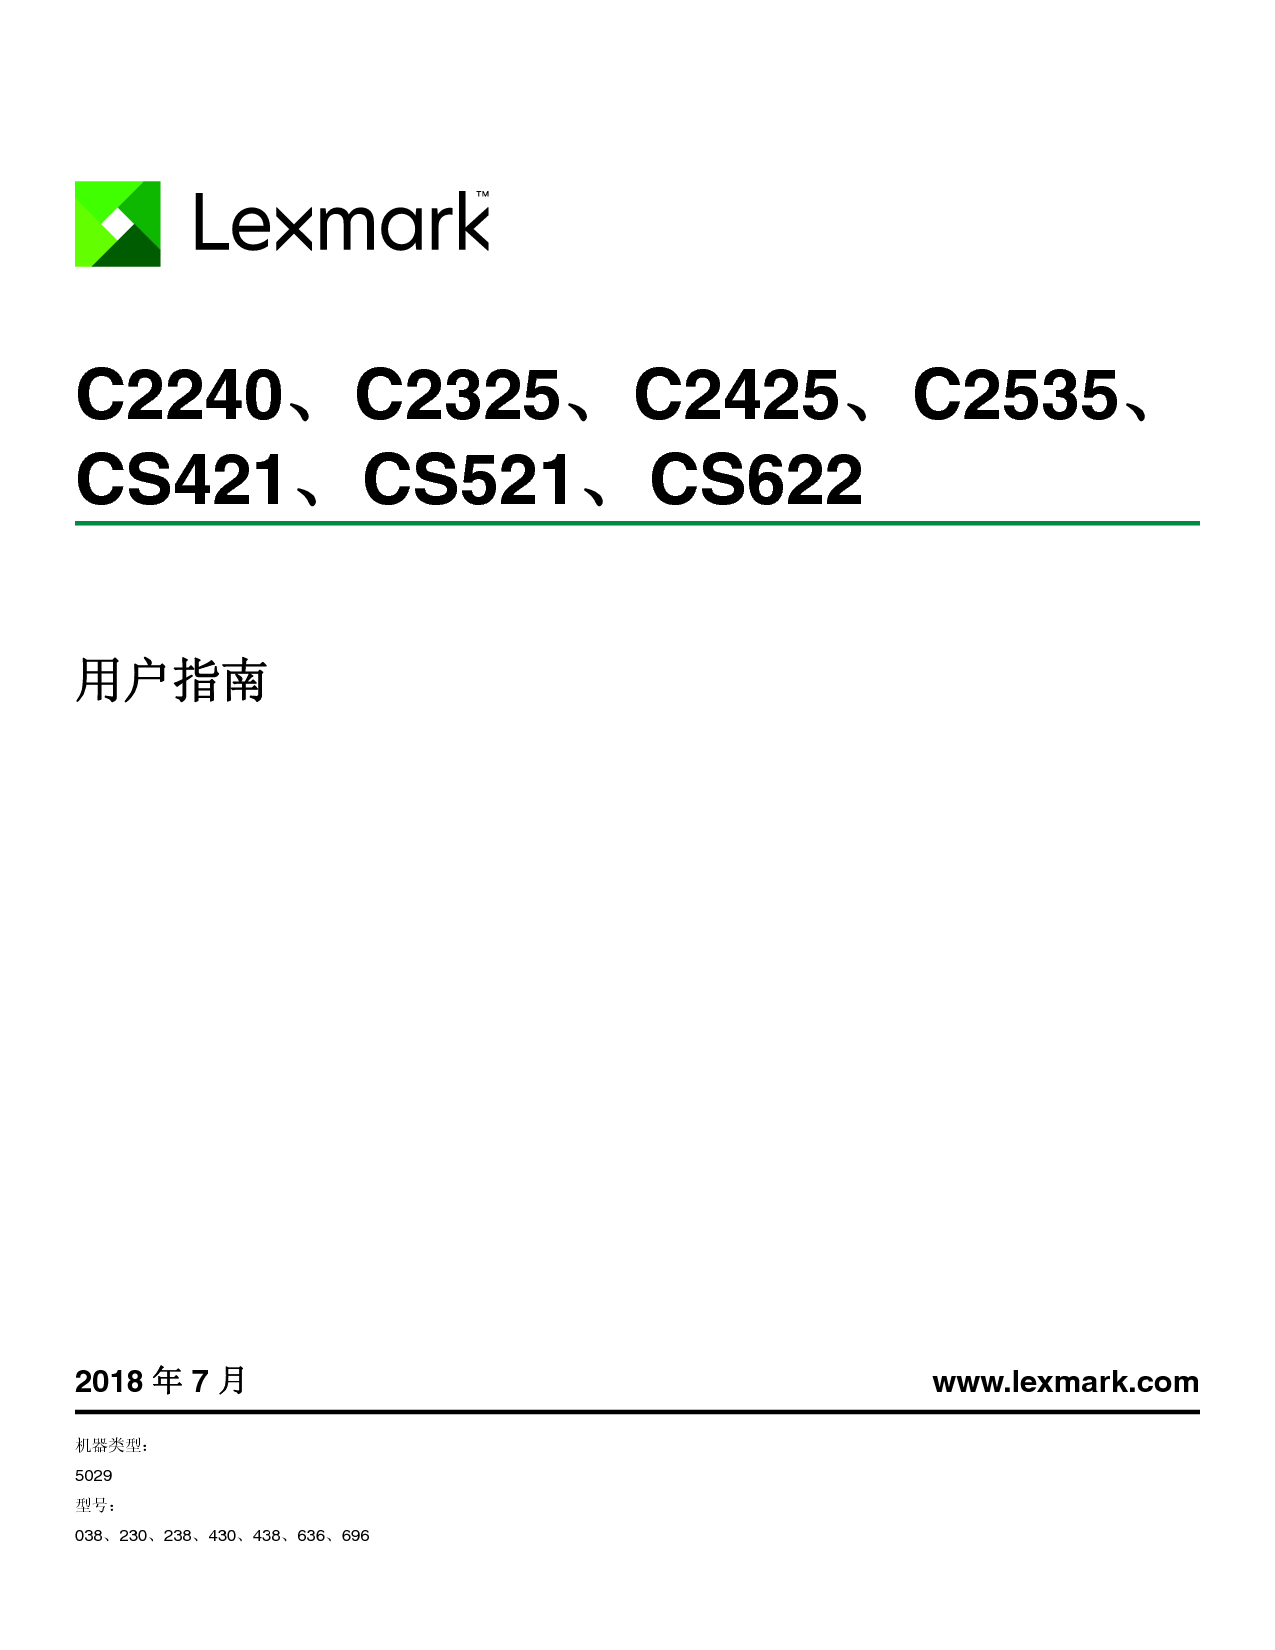 利盟 Lexmark C2240, C2325, CS421, CS622 用户指南 封面